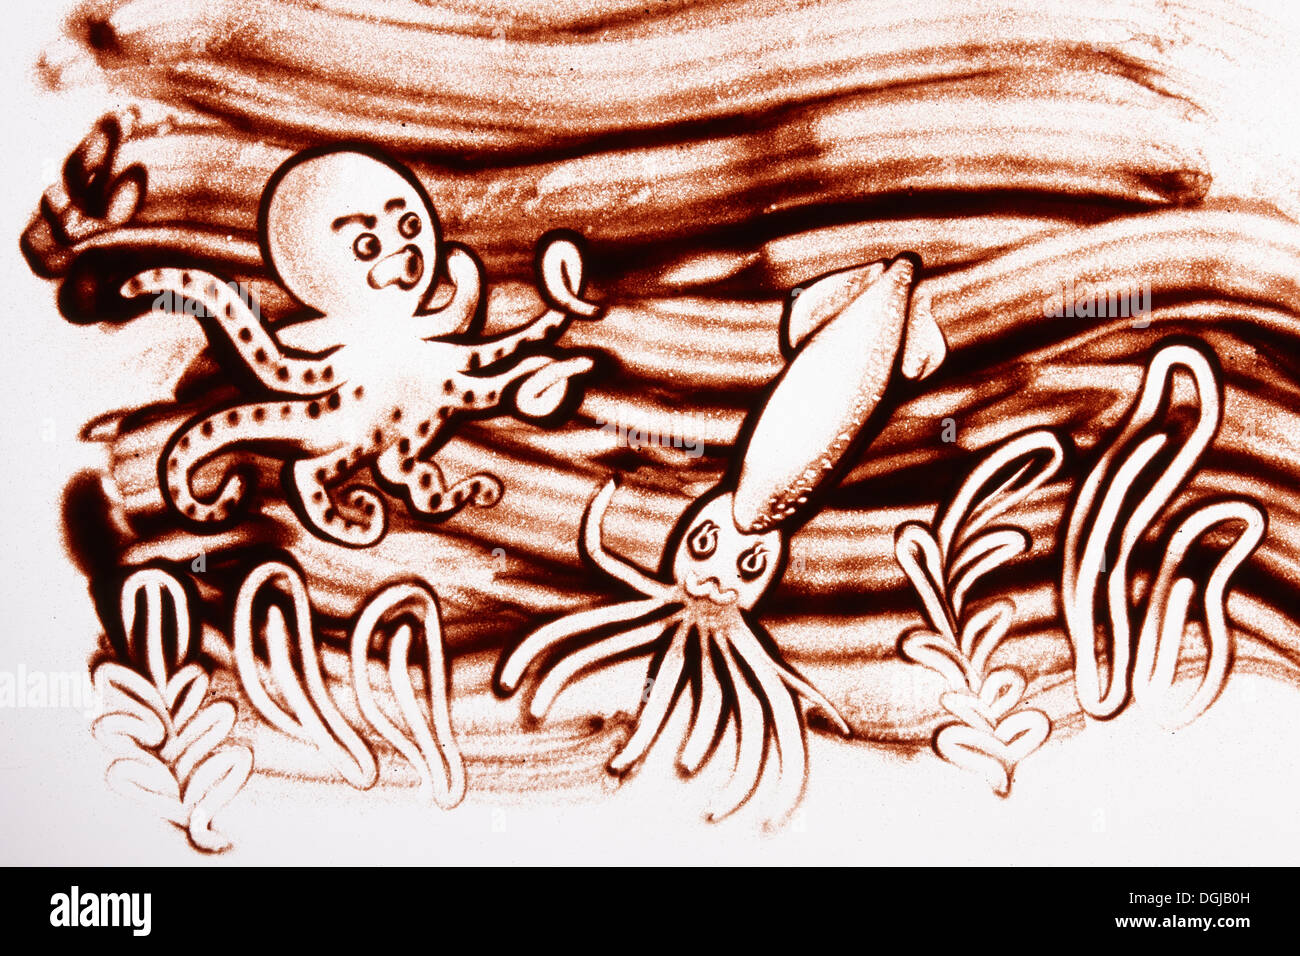 Un dessin sur sable d'un squid et une pieuvre Banque D'Images